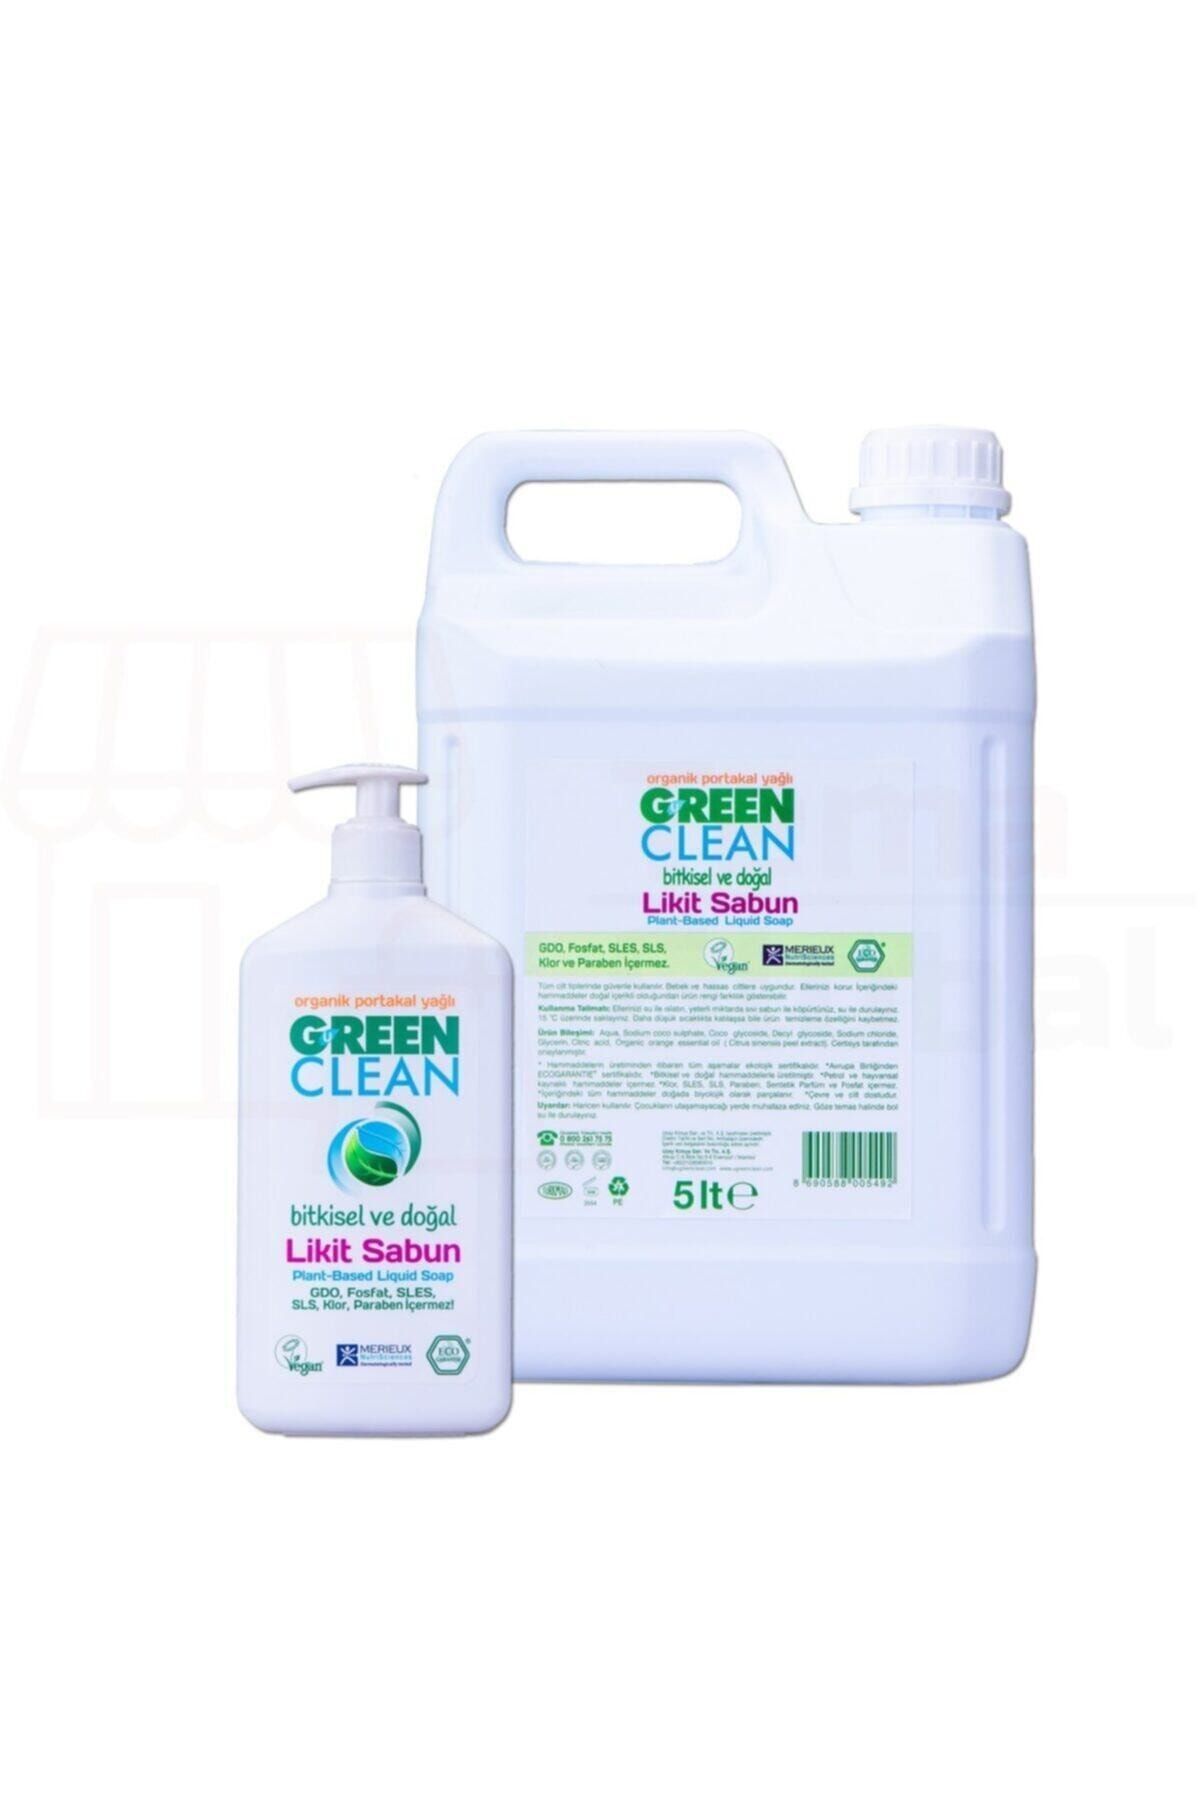 Green Clean Organik Portakal Yağlı Likit Sabun 5000 ml 500 ml 2'li Set